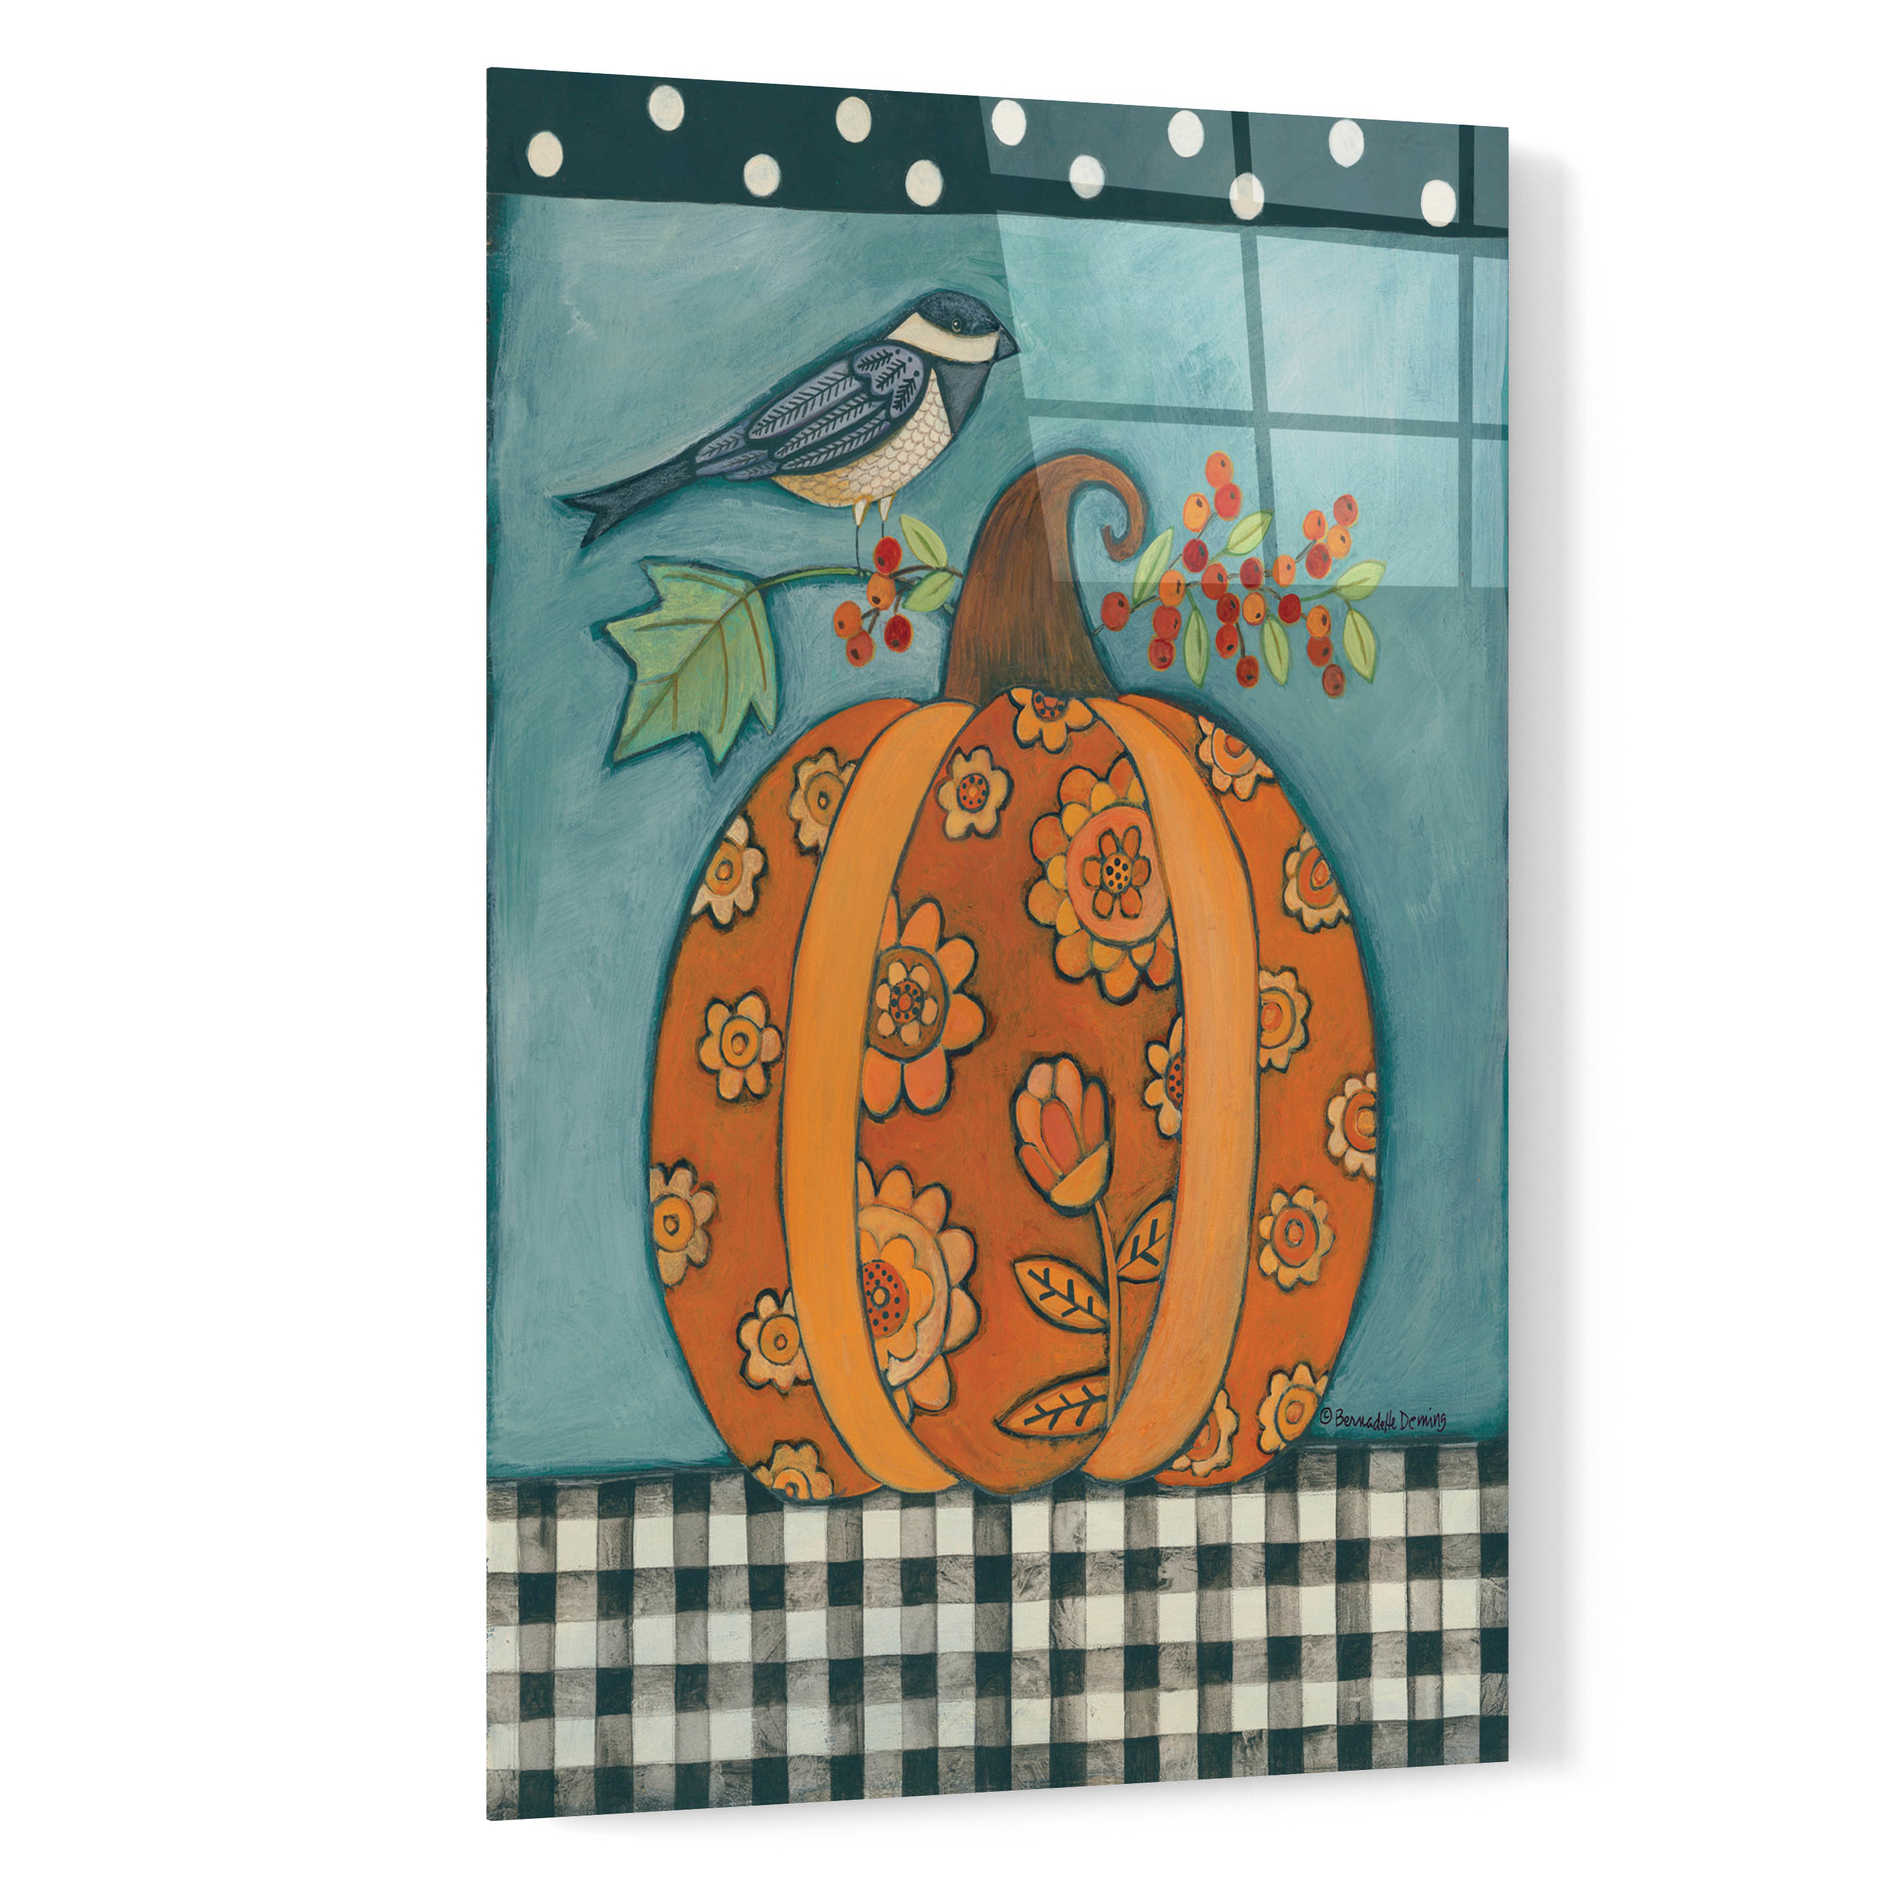 Epic Art "Patterned Pumpkin and Bird" by Bernadette Deming, Acrylic Glass Wall Art,16x24